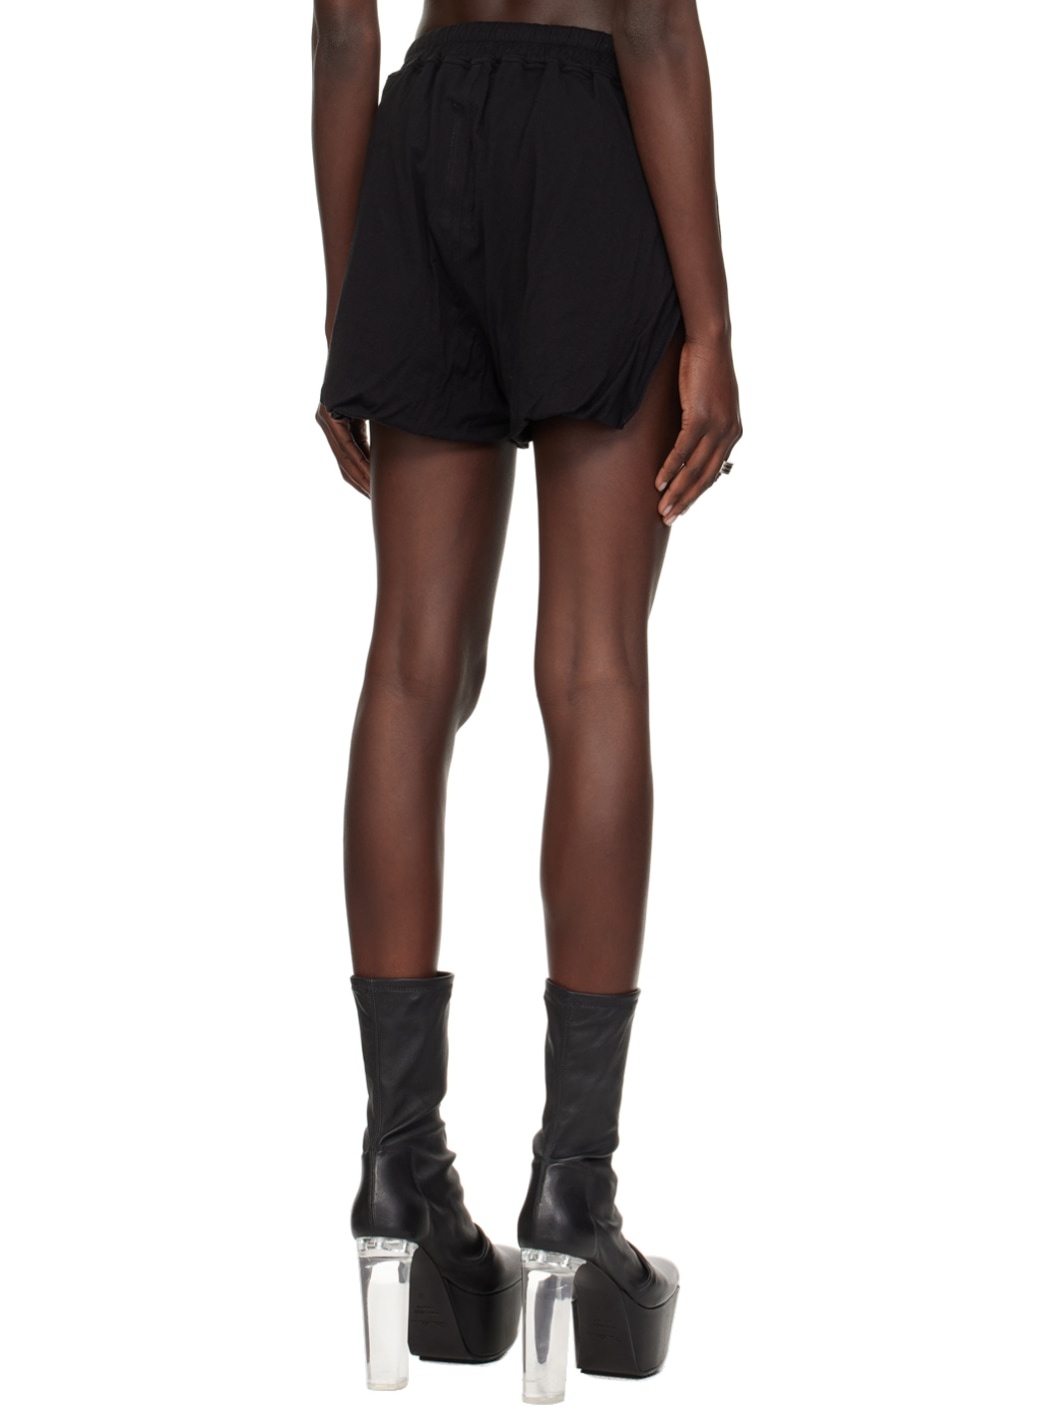 Black Gabe Shorts - 3